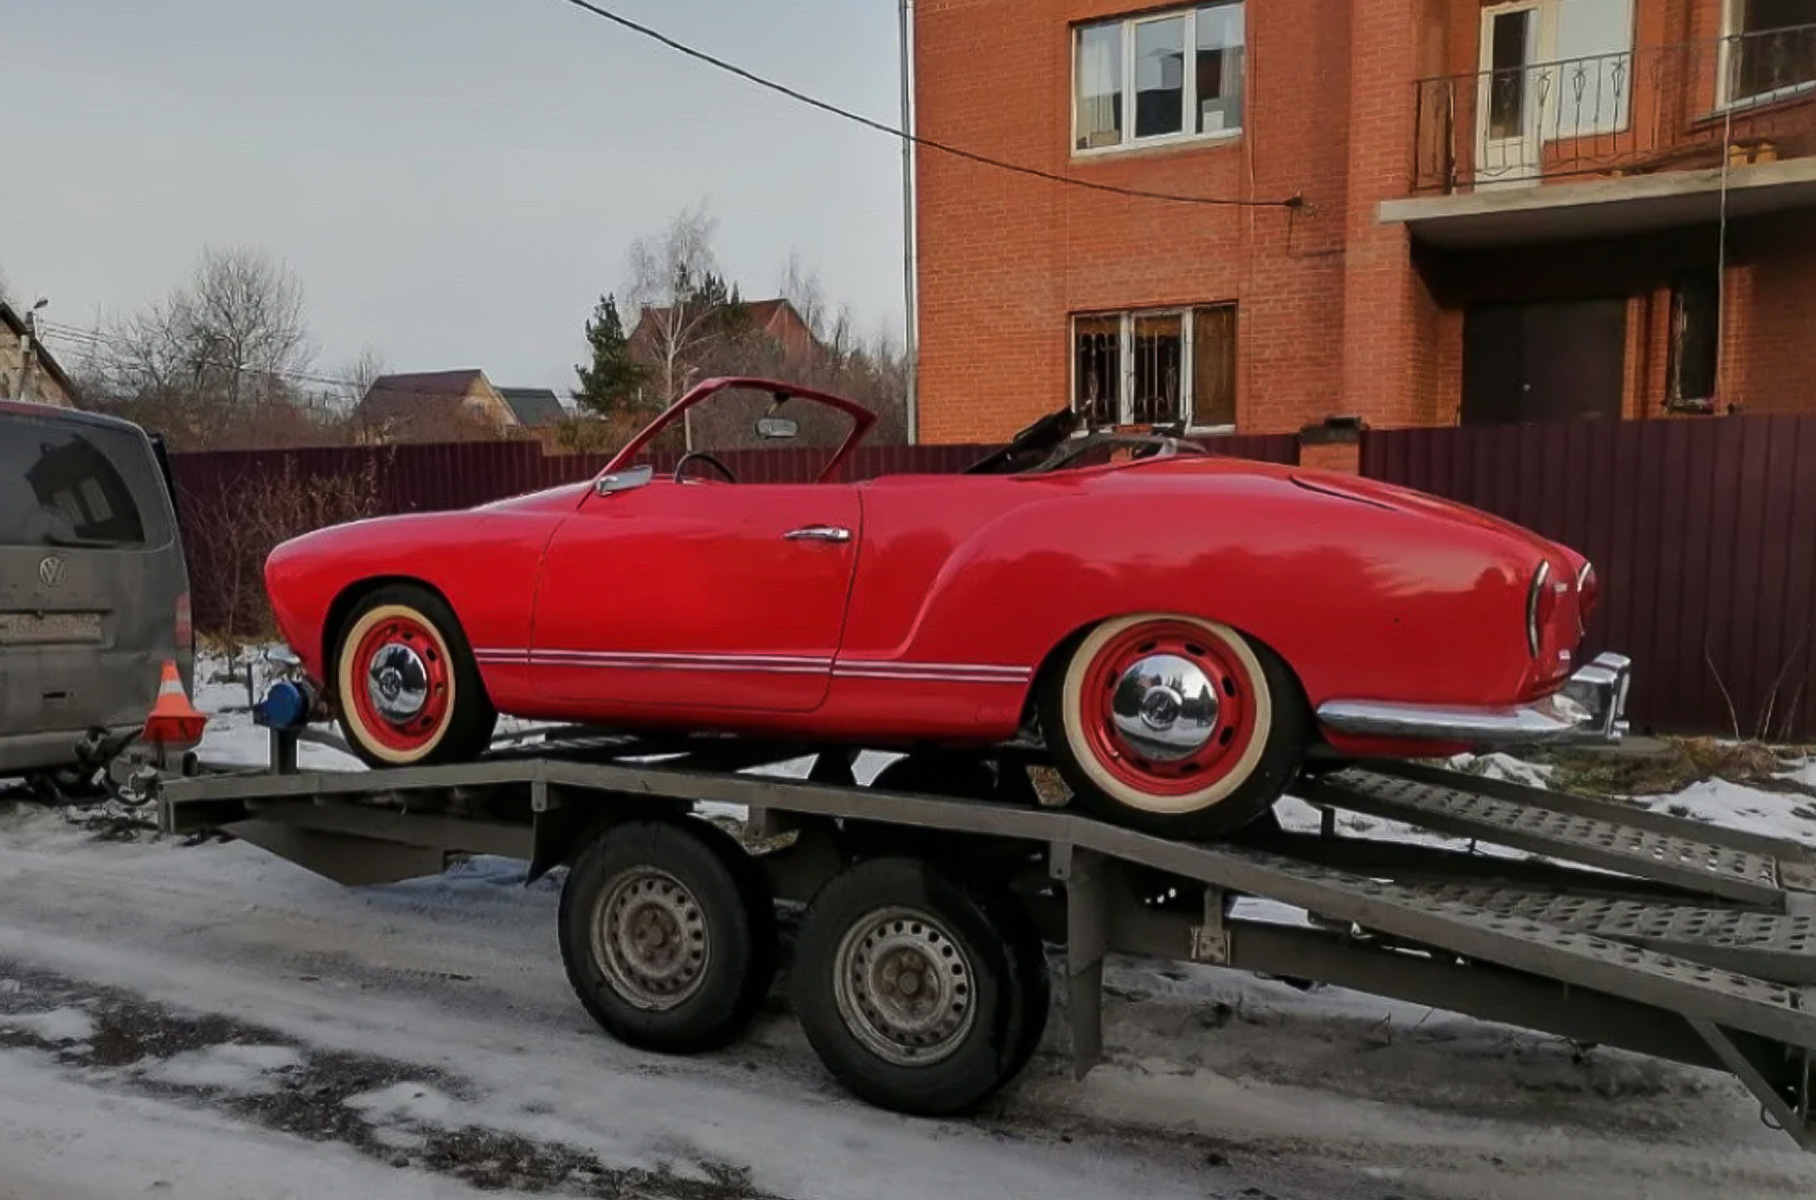 Олды тут: самые старые машины России